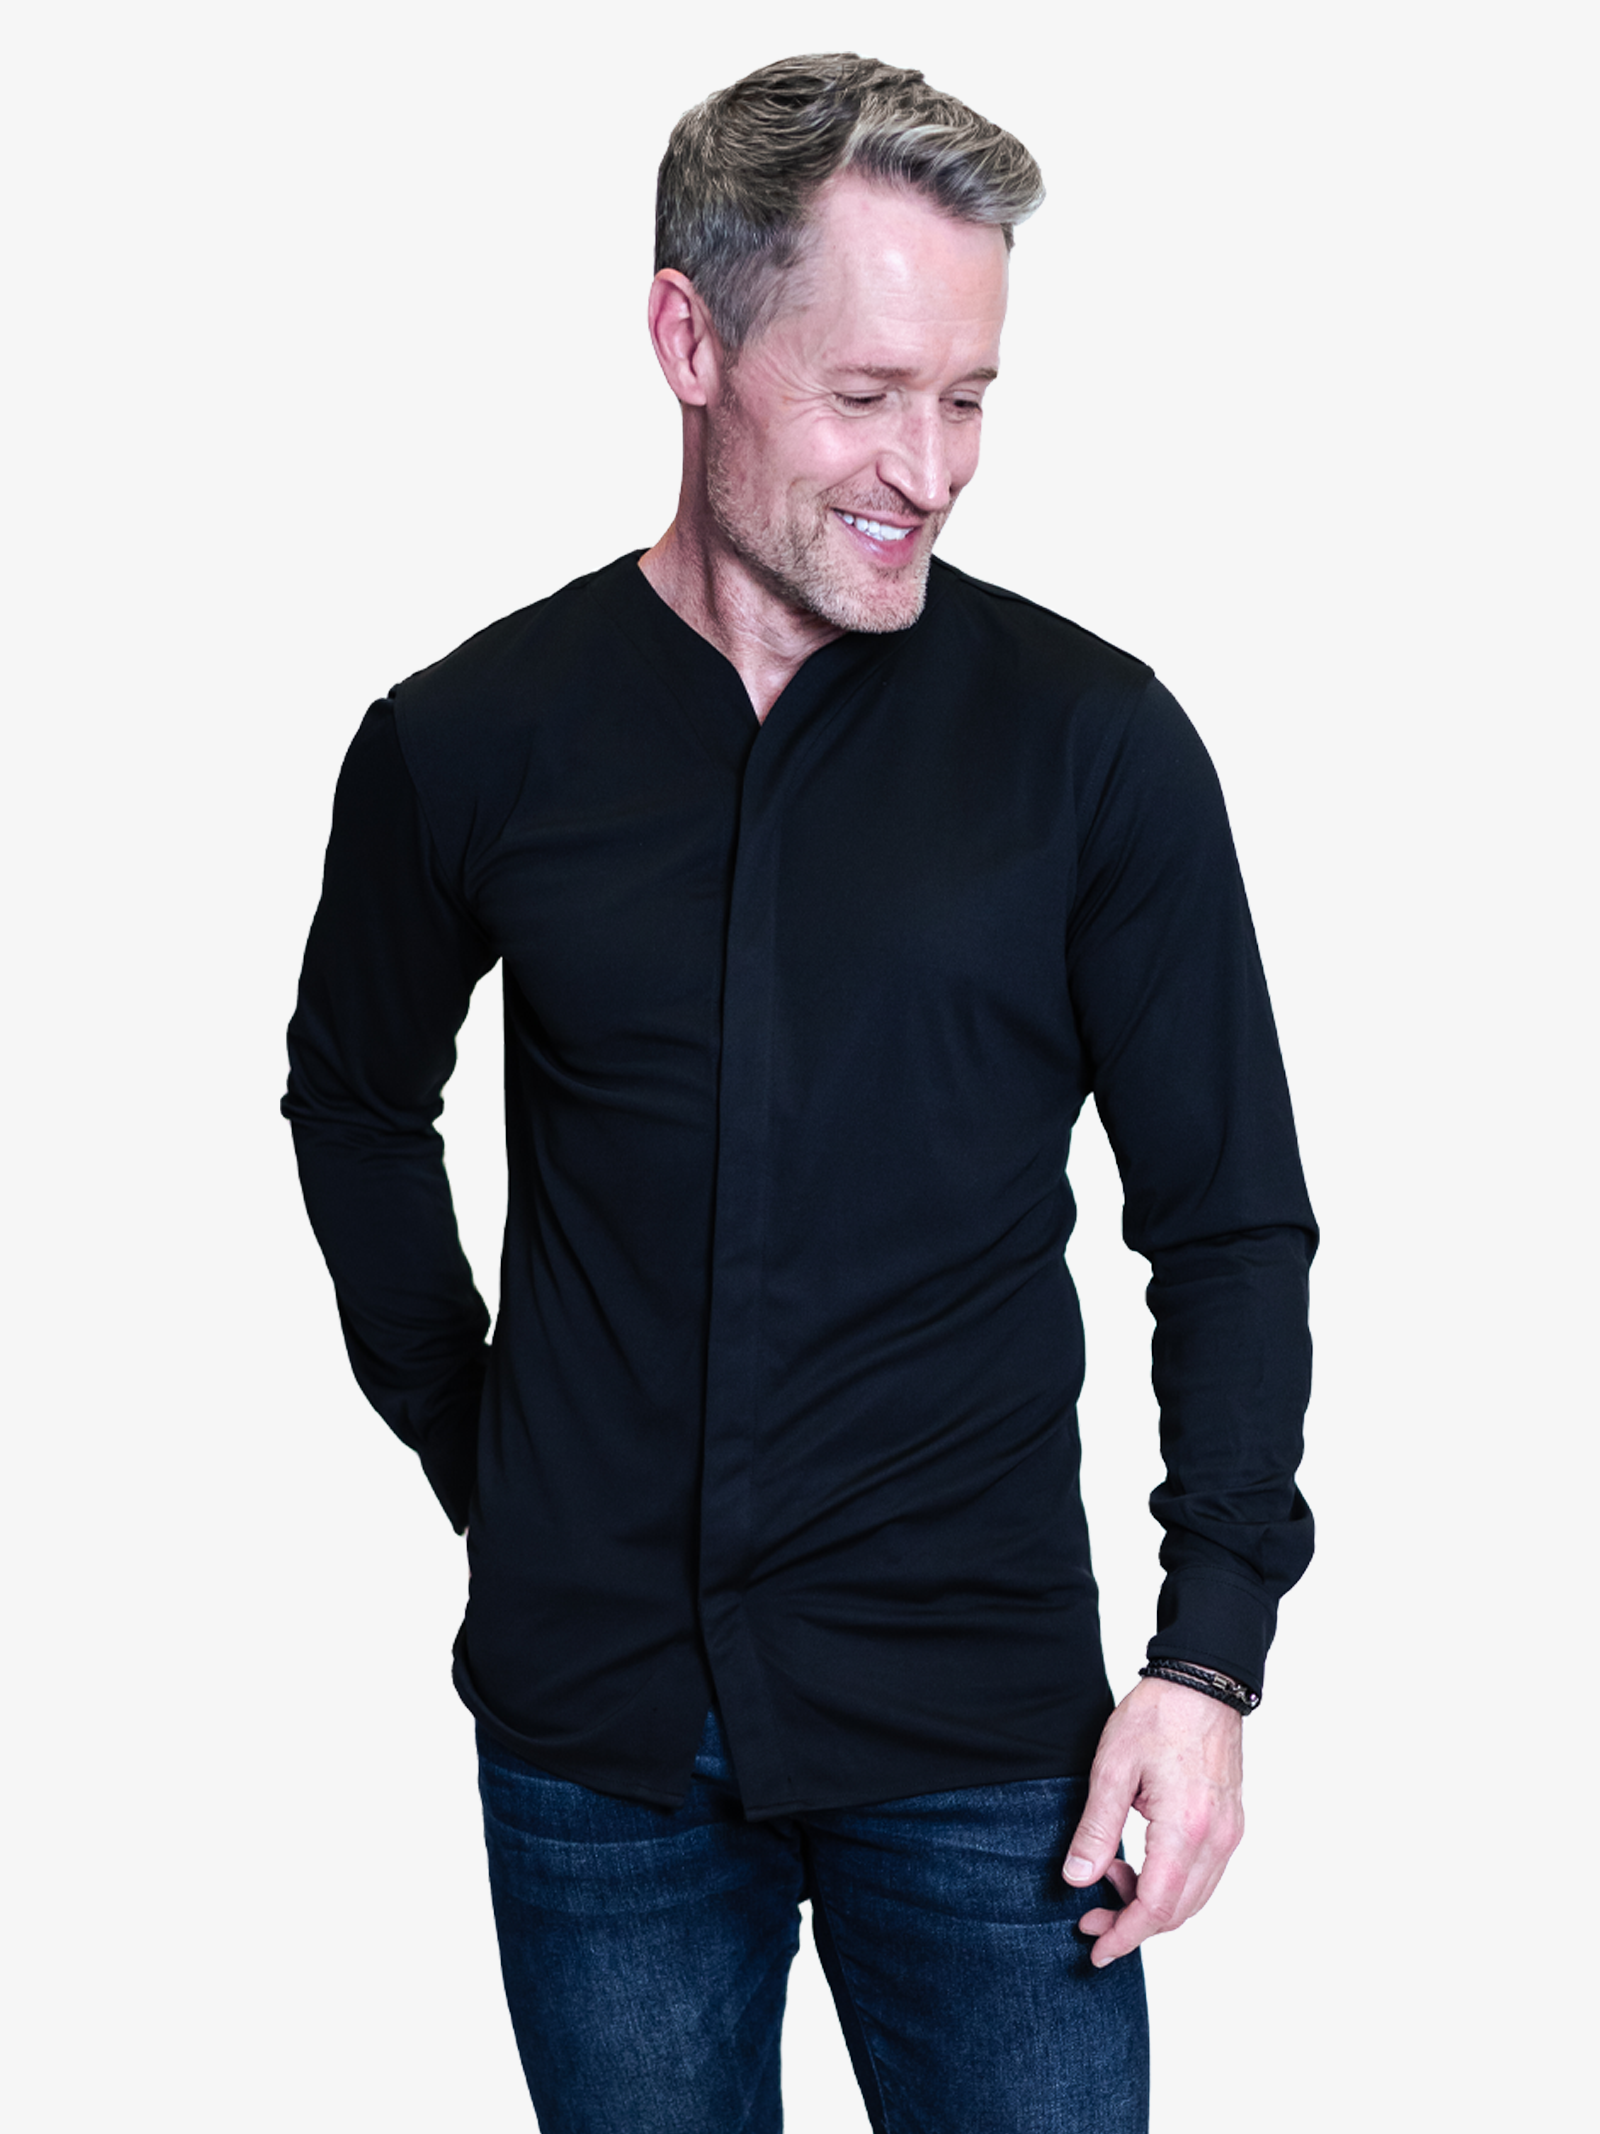 Black Denim Full Sleeves Shirt|293296301